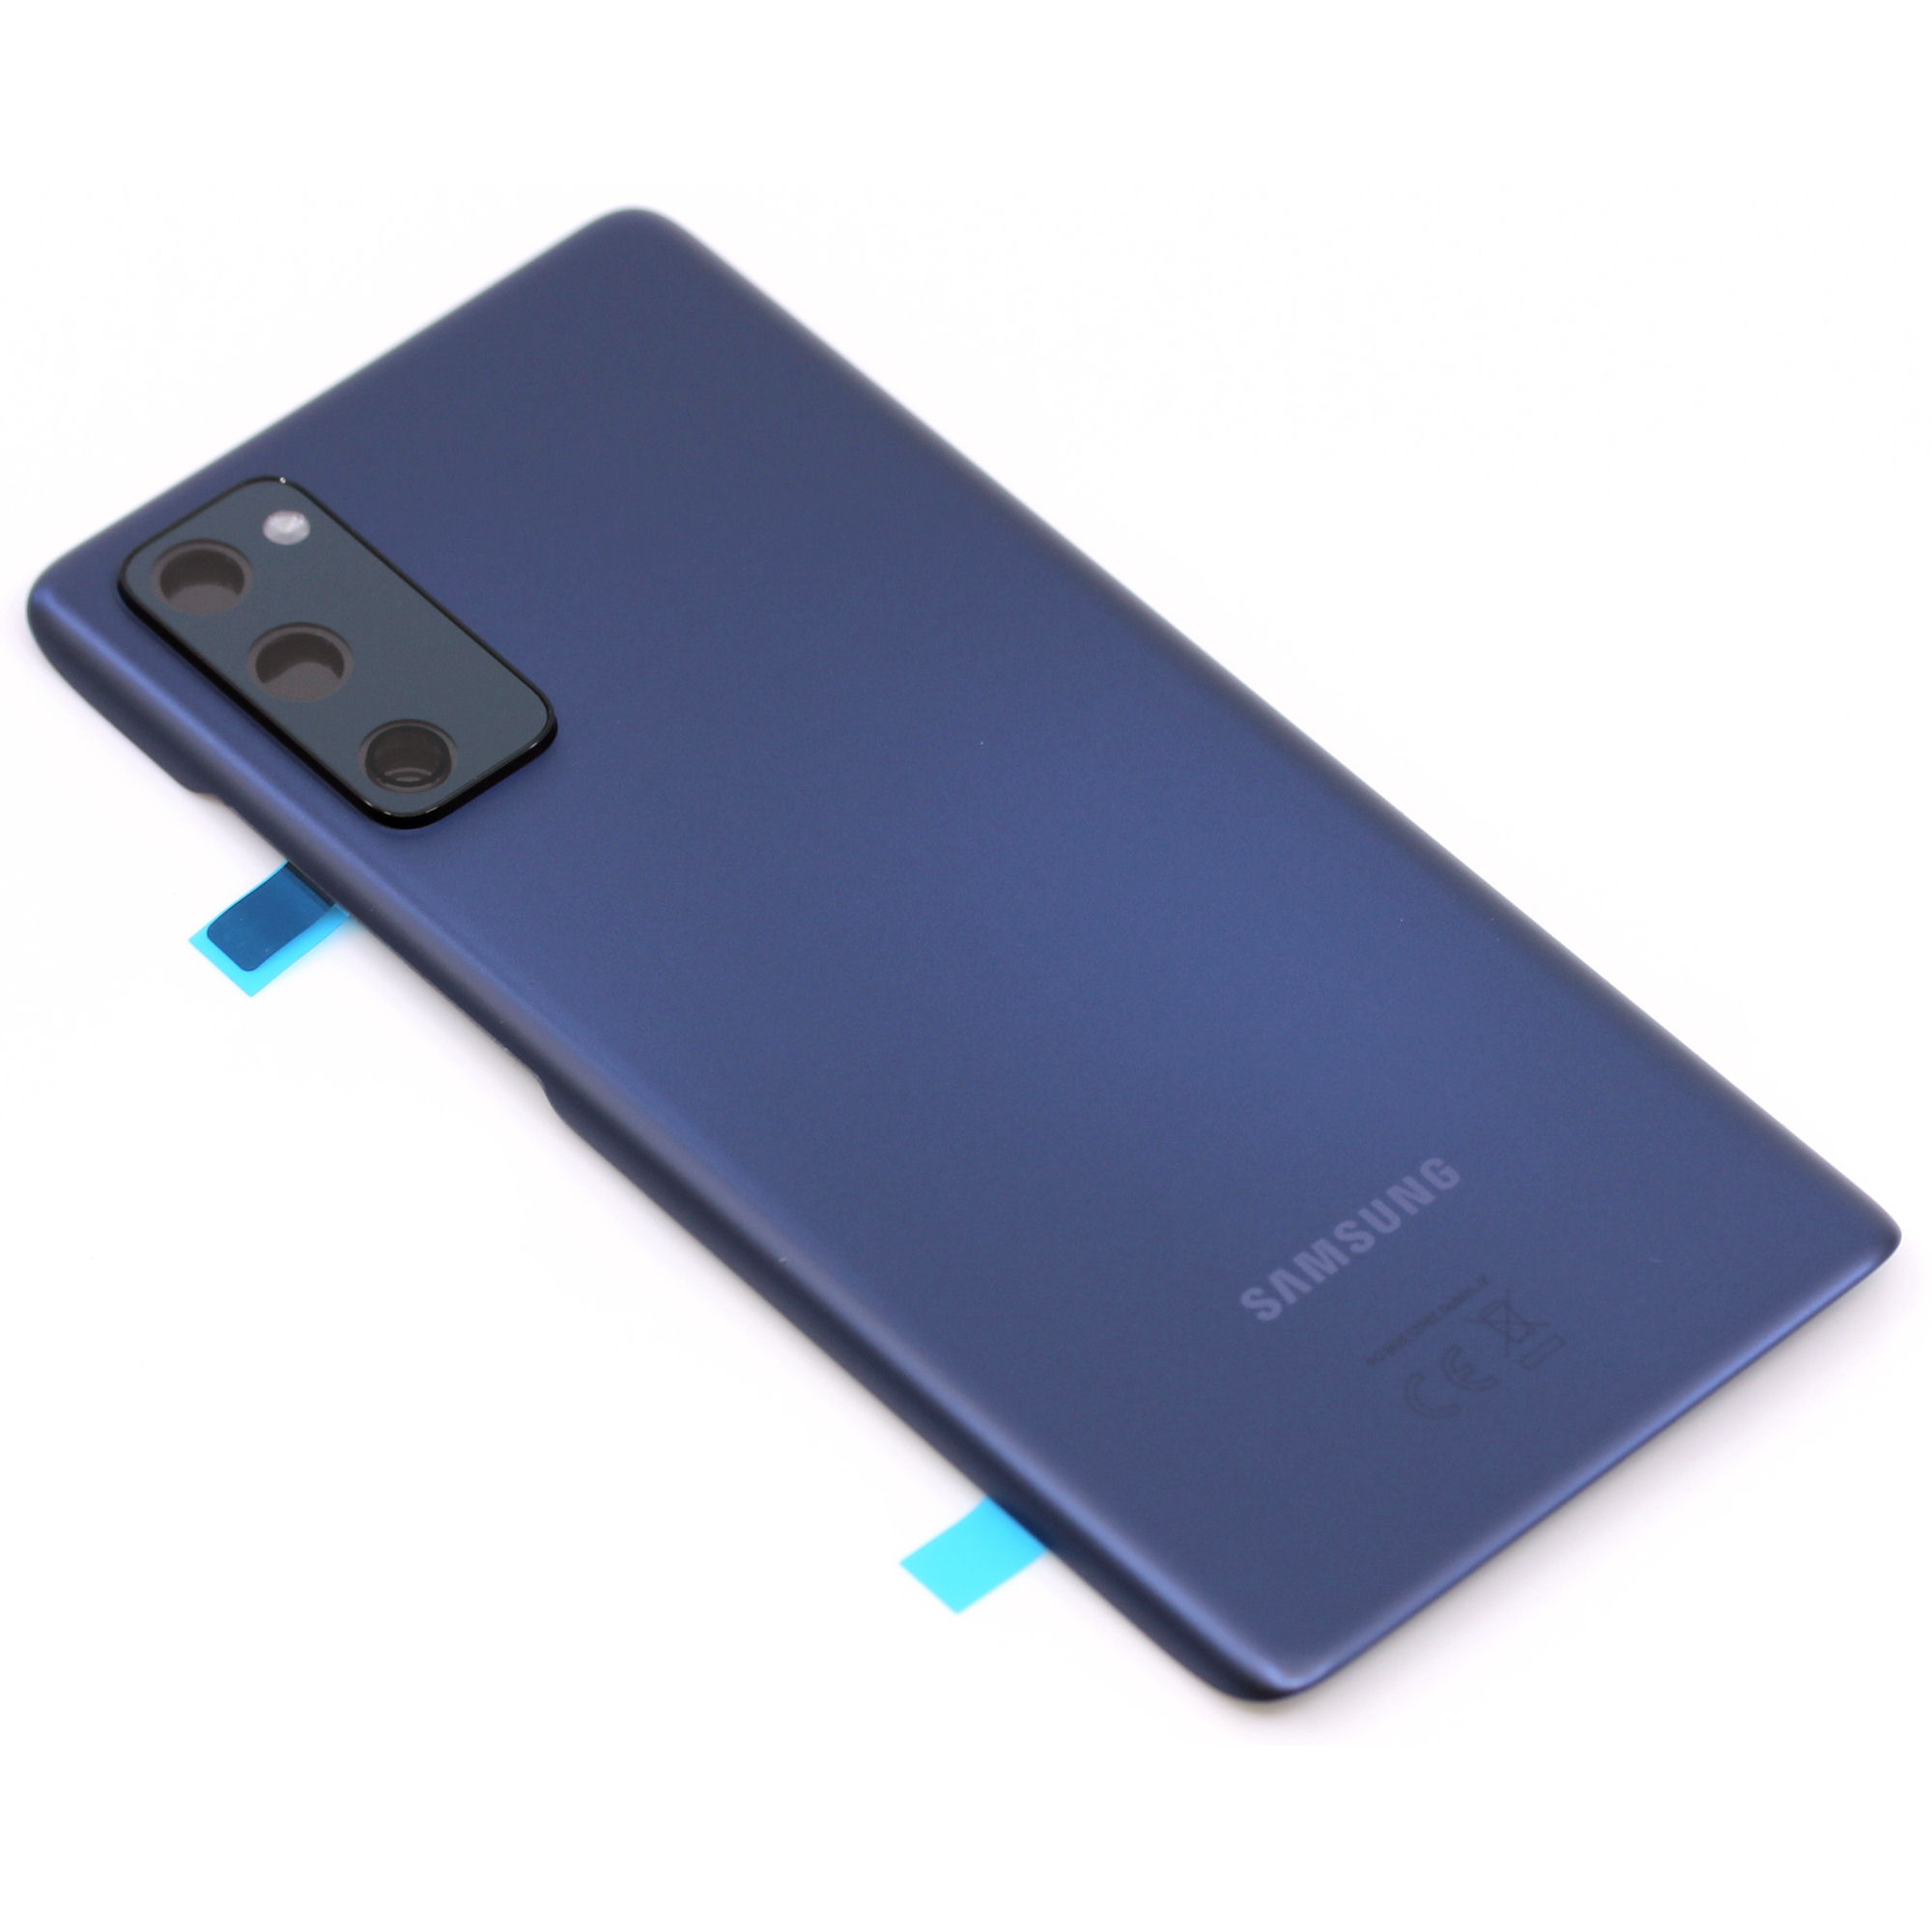 Samsung Galaxy S20 FE 5G Akkudeckel blau Backcover